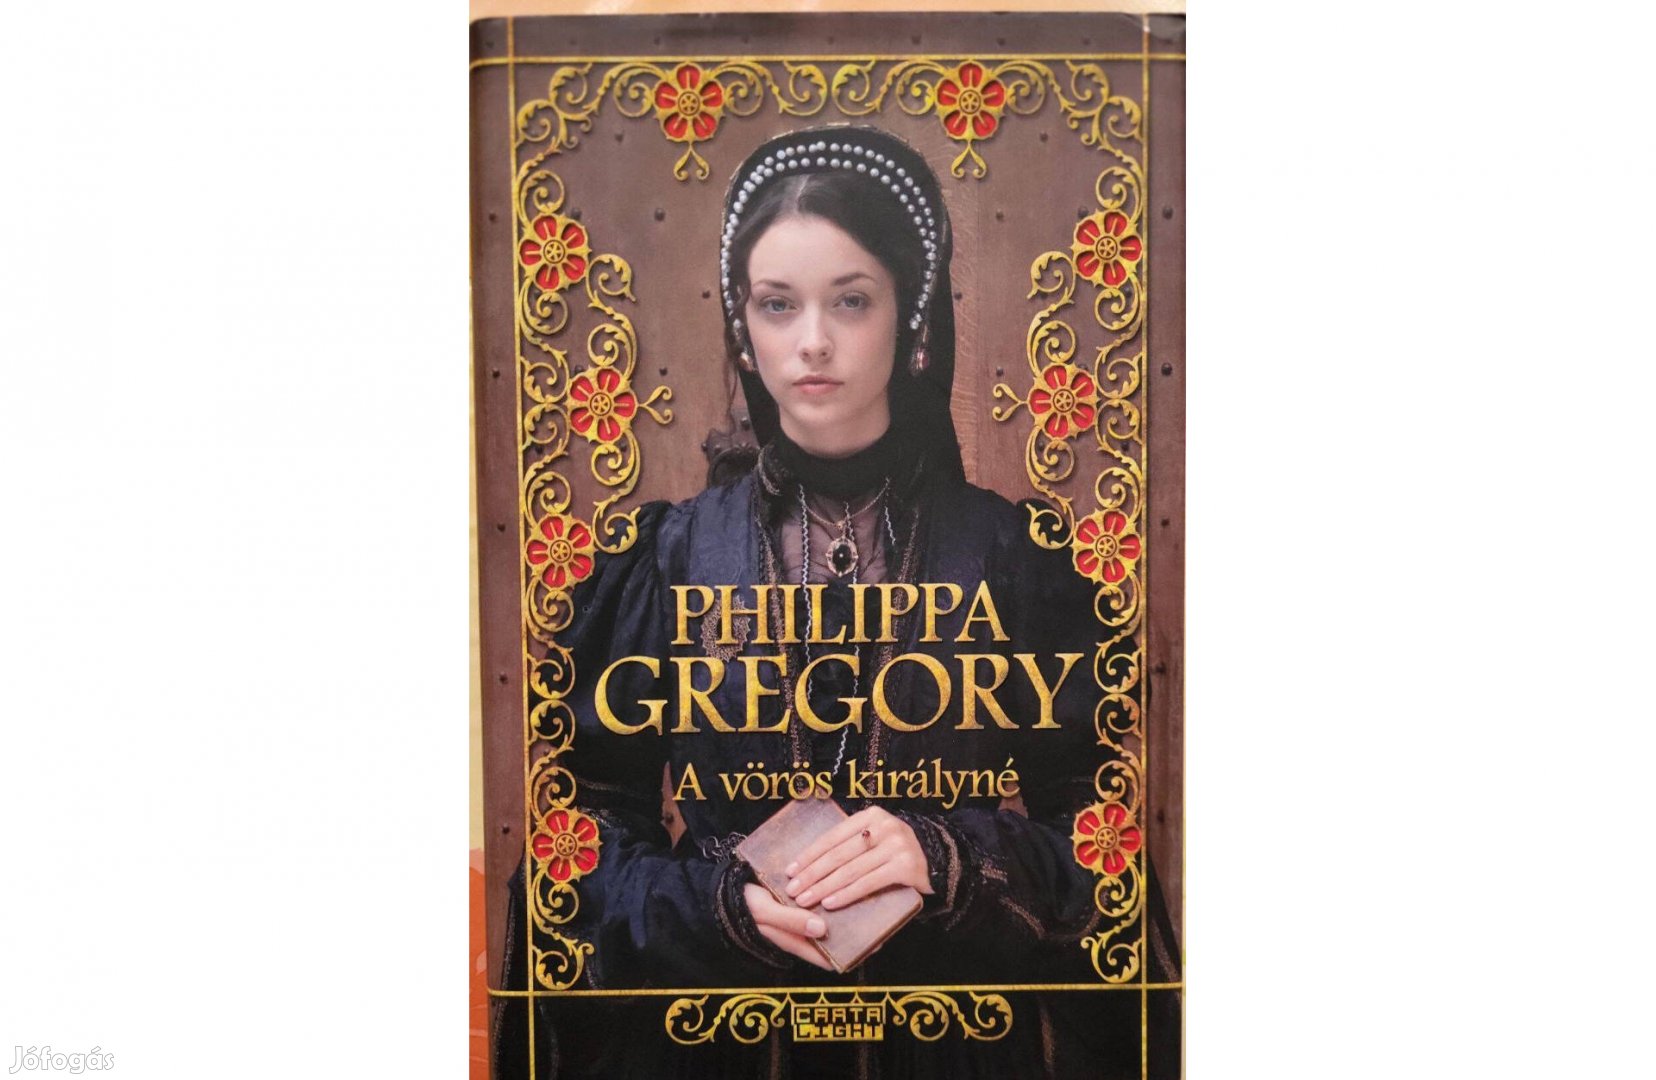 Philippa Gregory: A vörös királyné